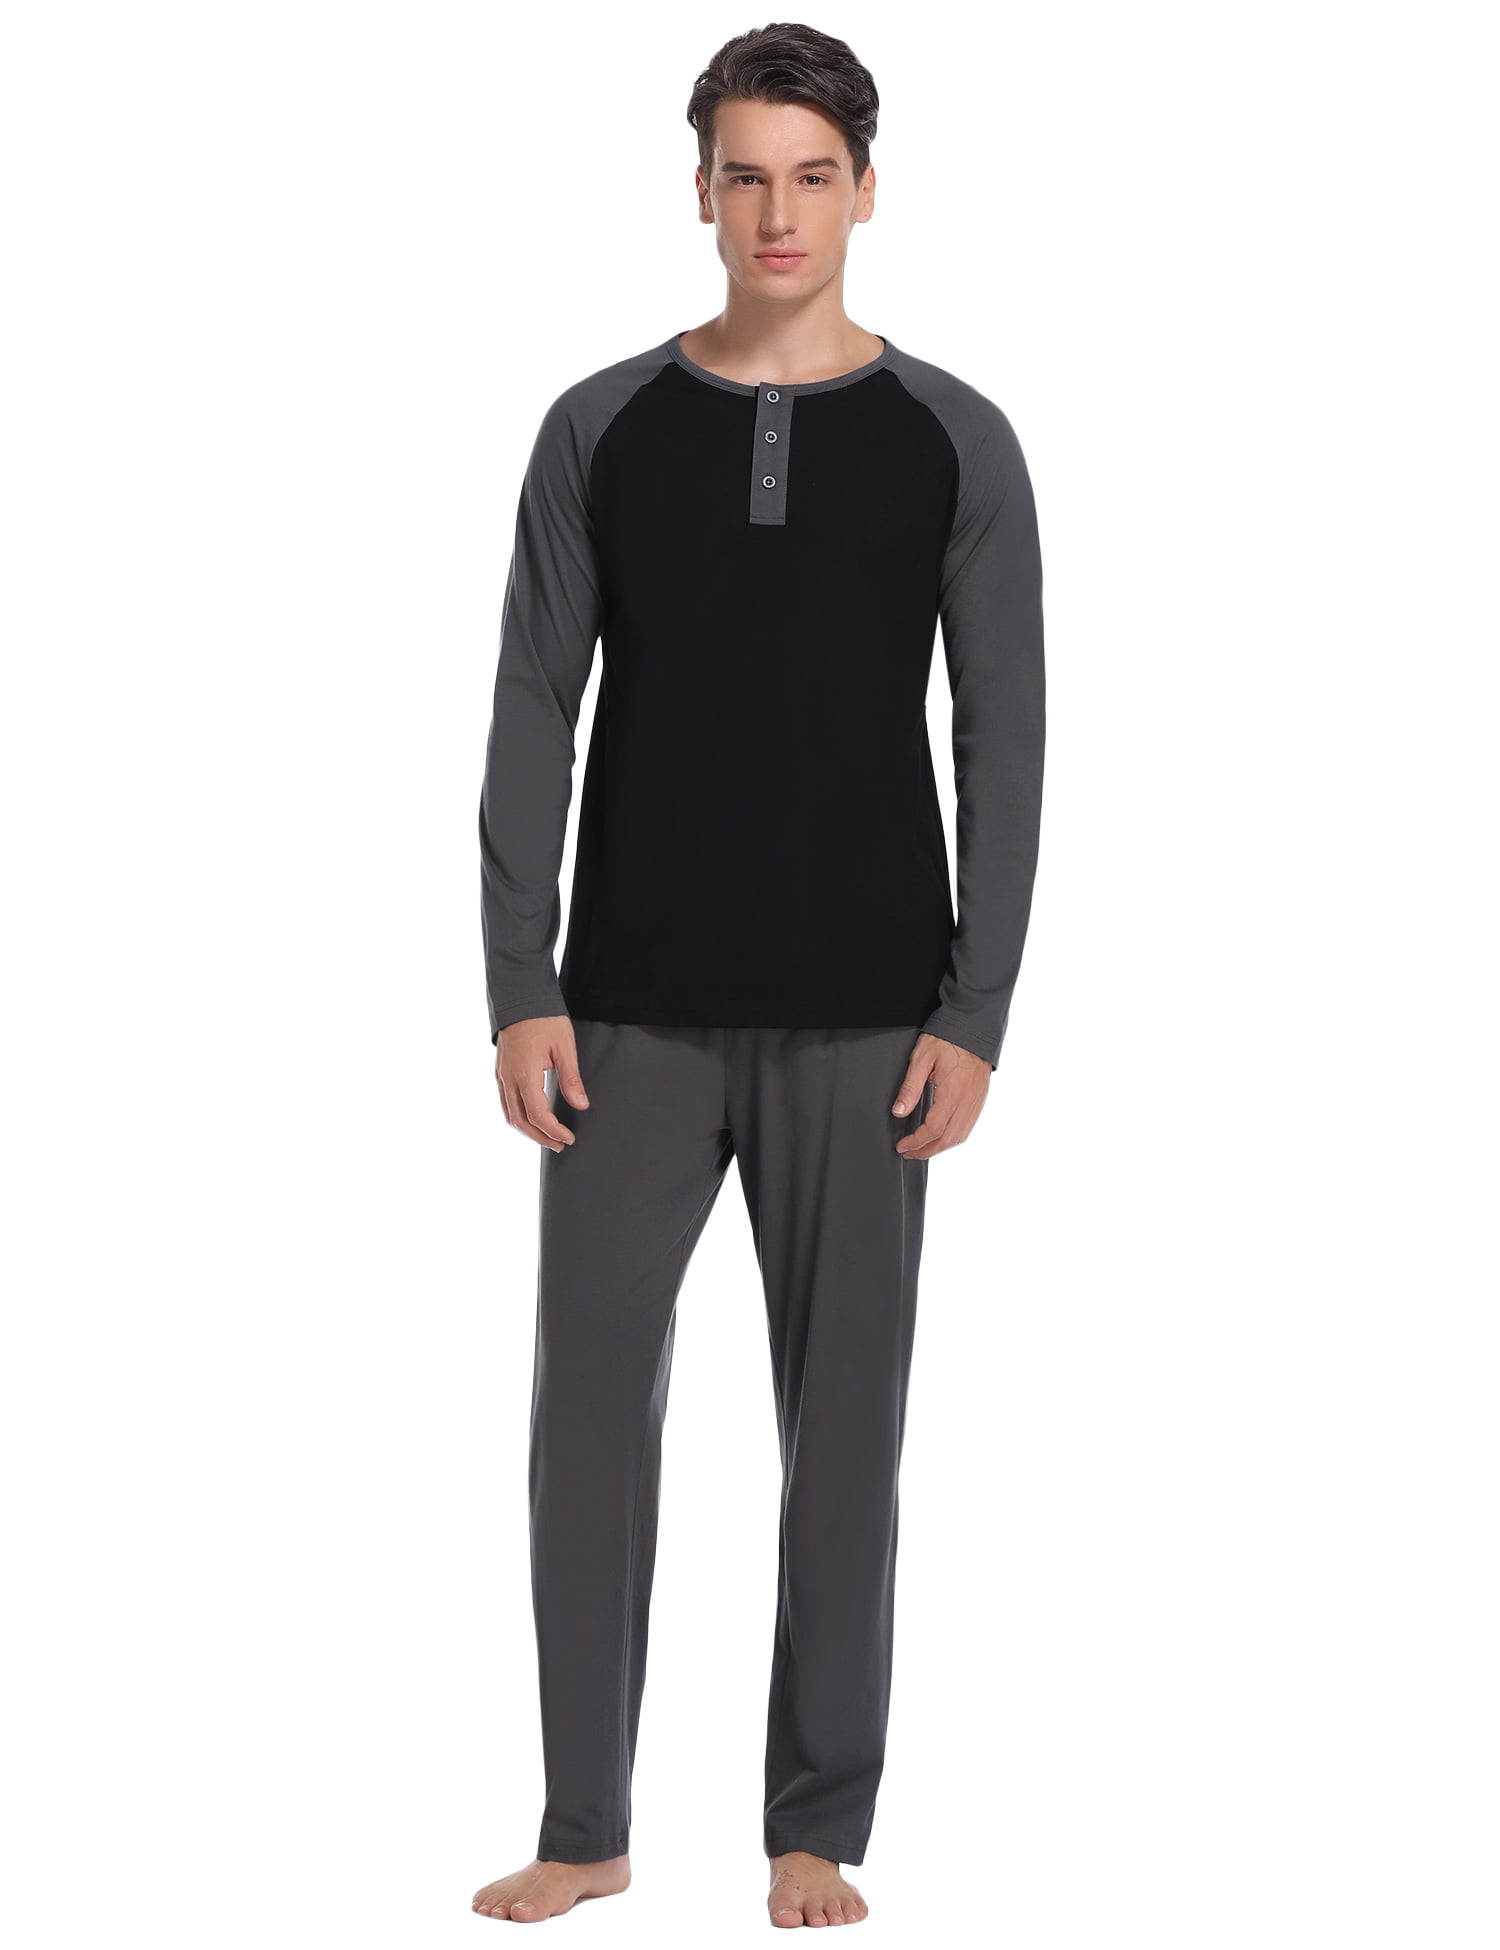 Hawiton Mens Pyjamas Set Cotton Long Sleeve Top & Pants Pjs Nightwear Sleepwear Loungwear for Man